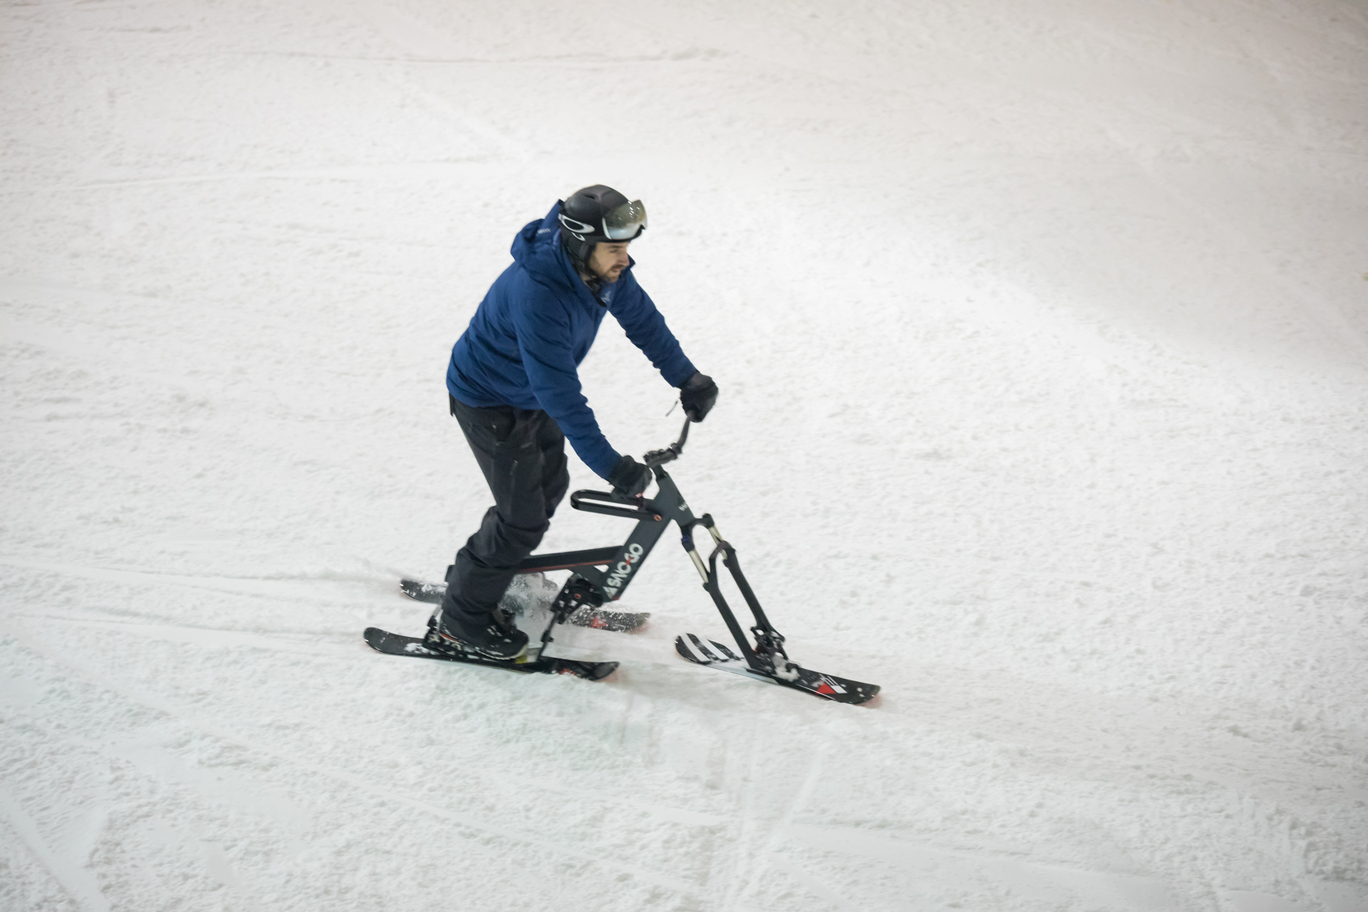 SNO-GO Bike Ski Resorts – SNO-GO Ski Bikes